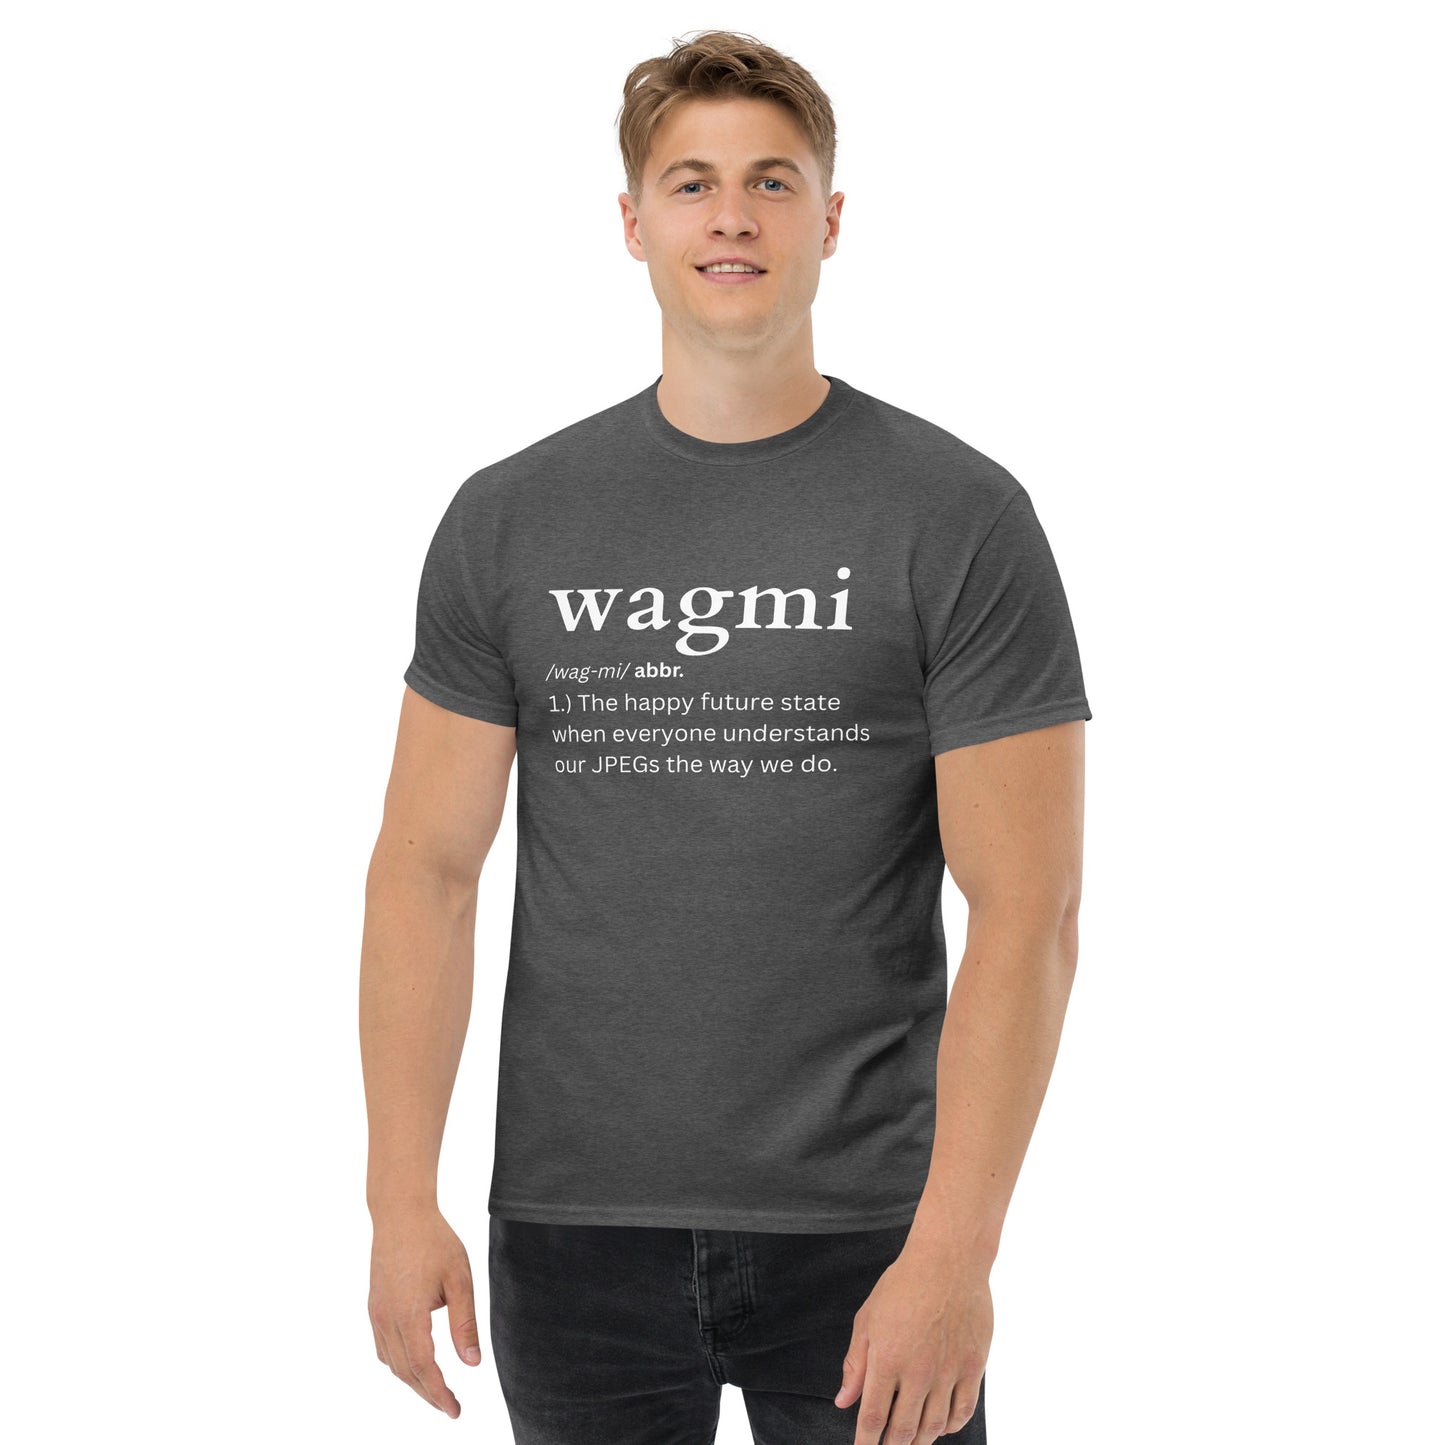 wagmi-tee-shirt-dark-heather